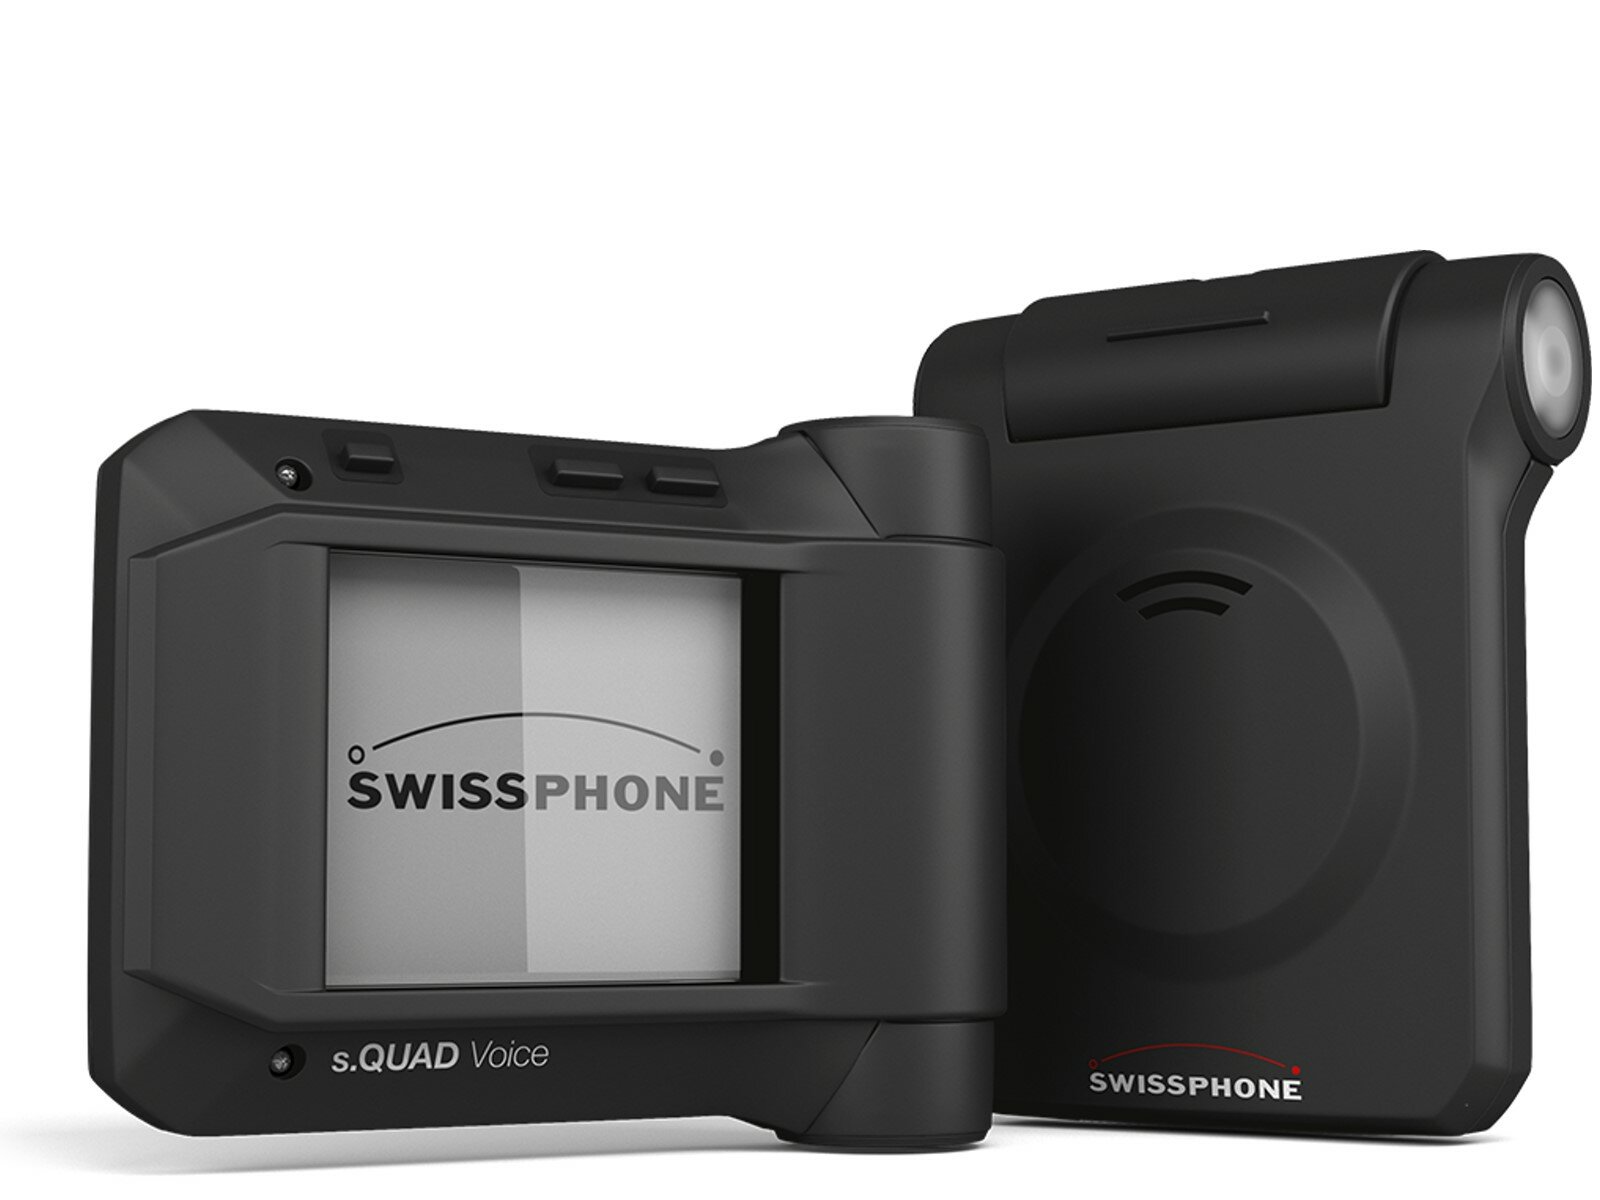 Swissphone s.QUAD Voice